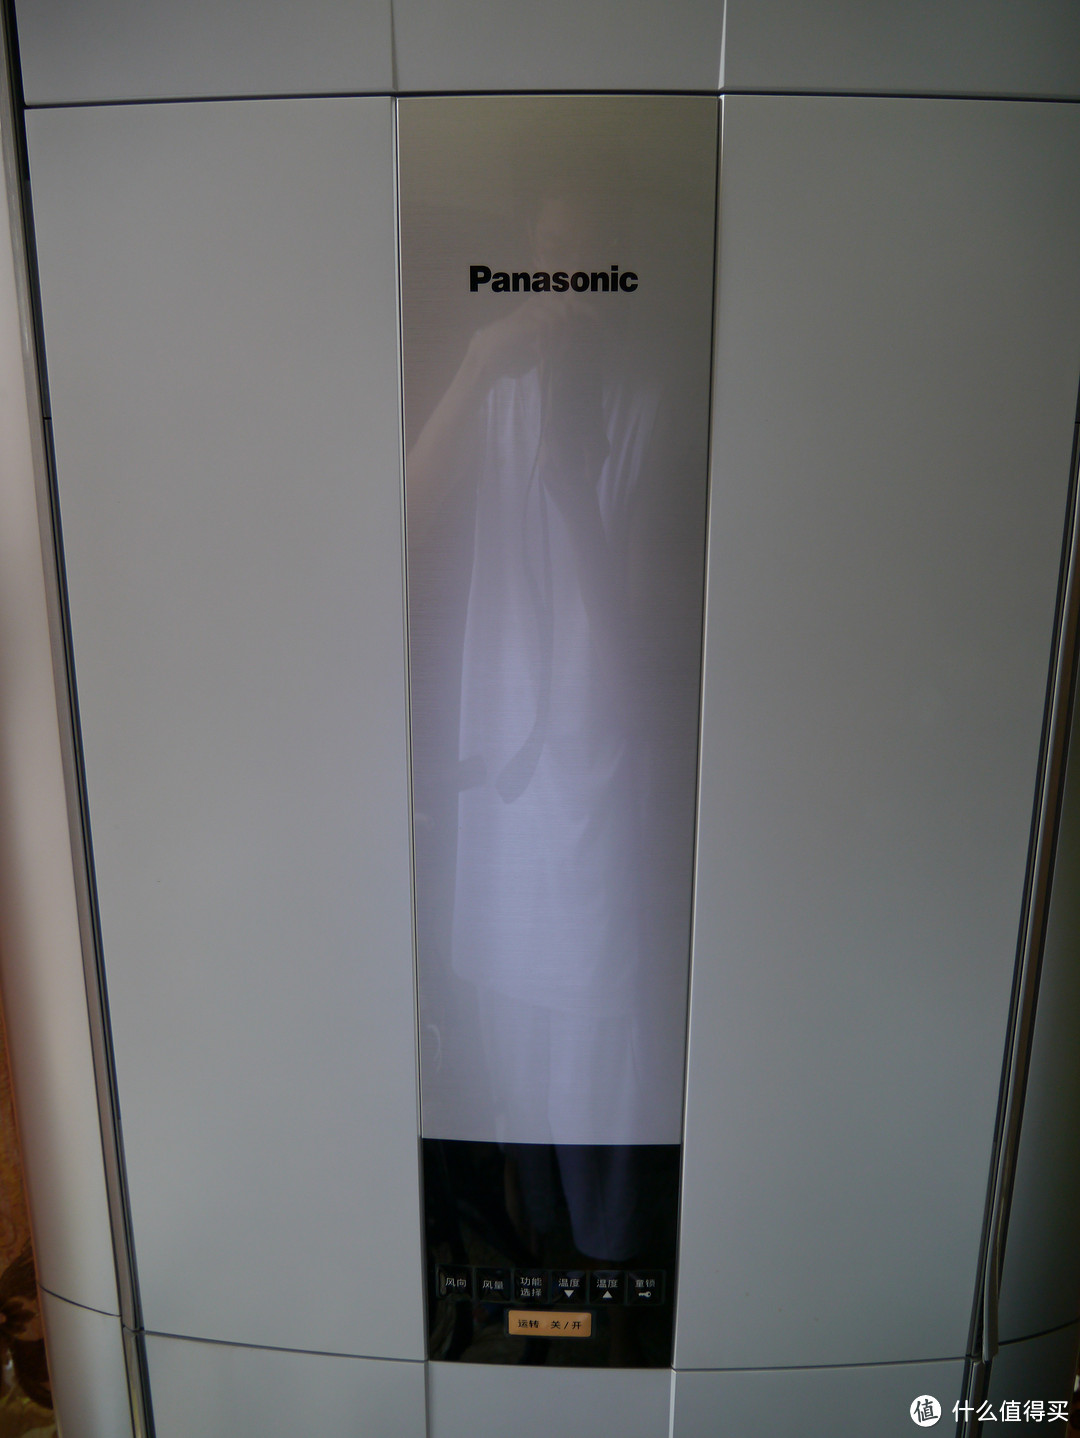 好吧，中控上面的液晶显示屏还有最上面的Panasonic。彰显出高贵典雅的气质。